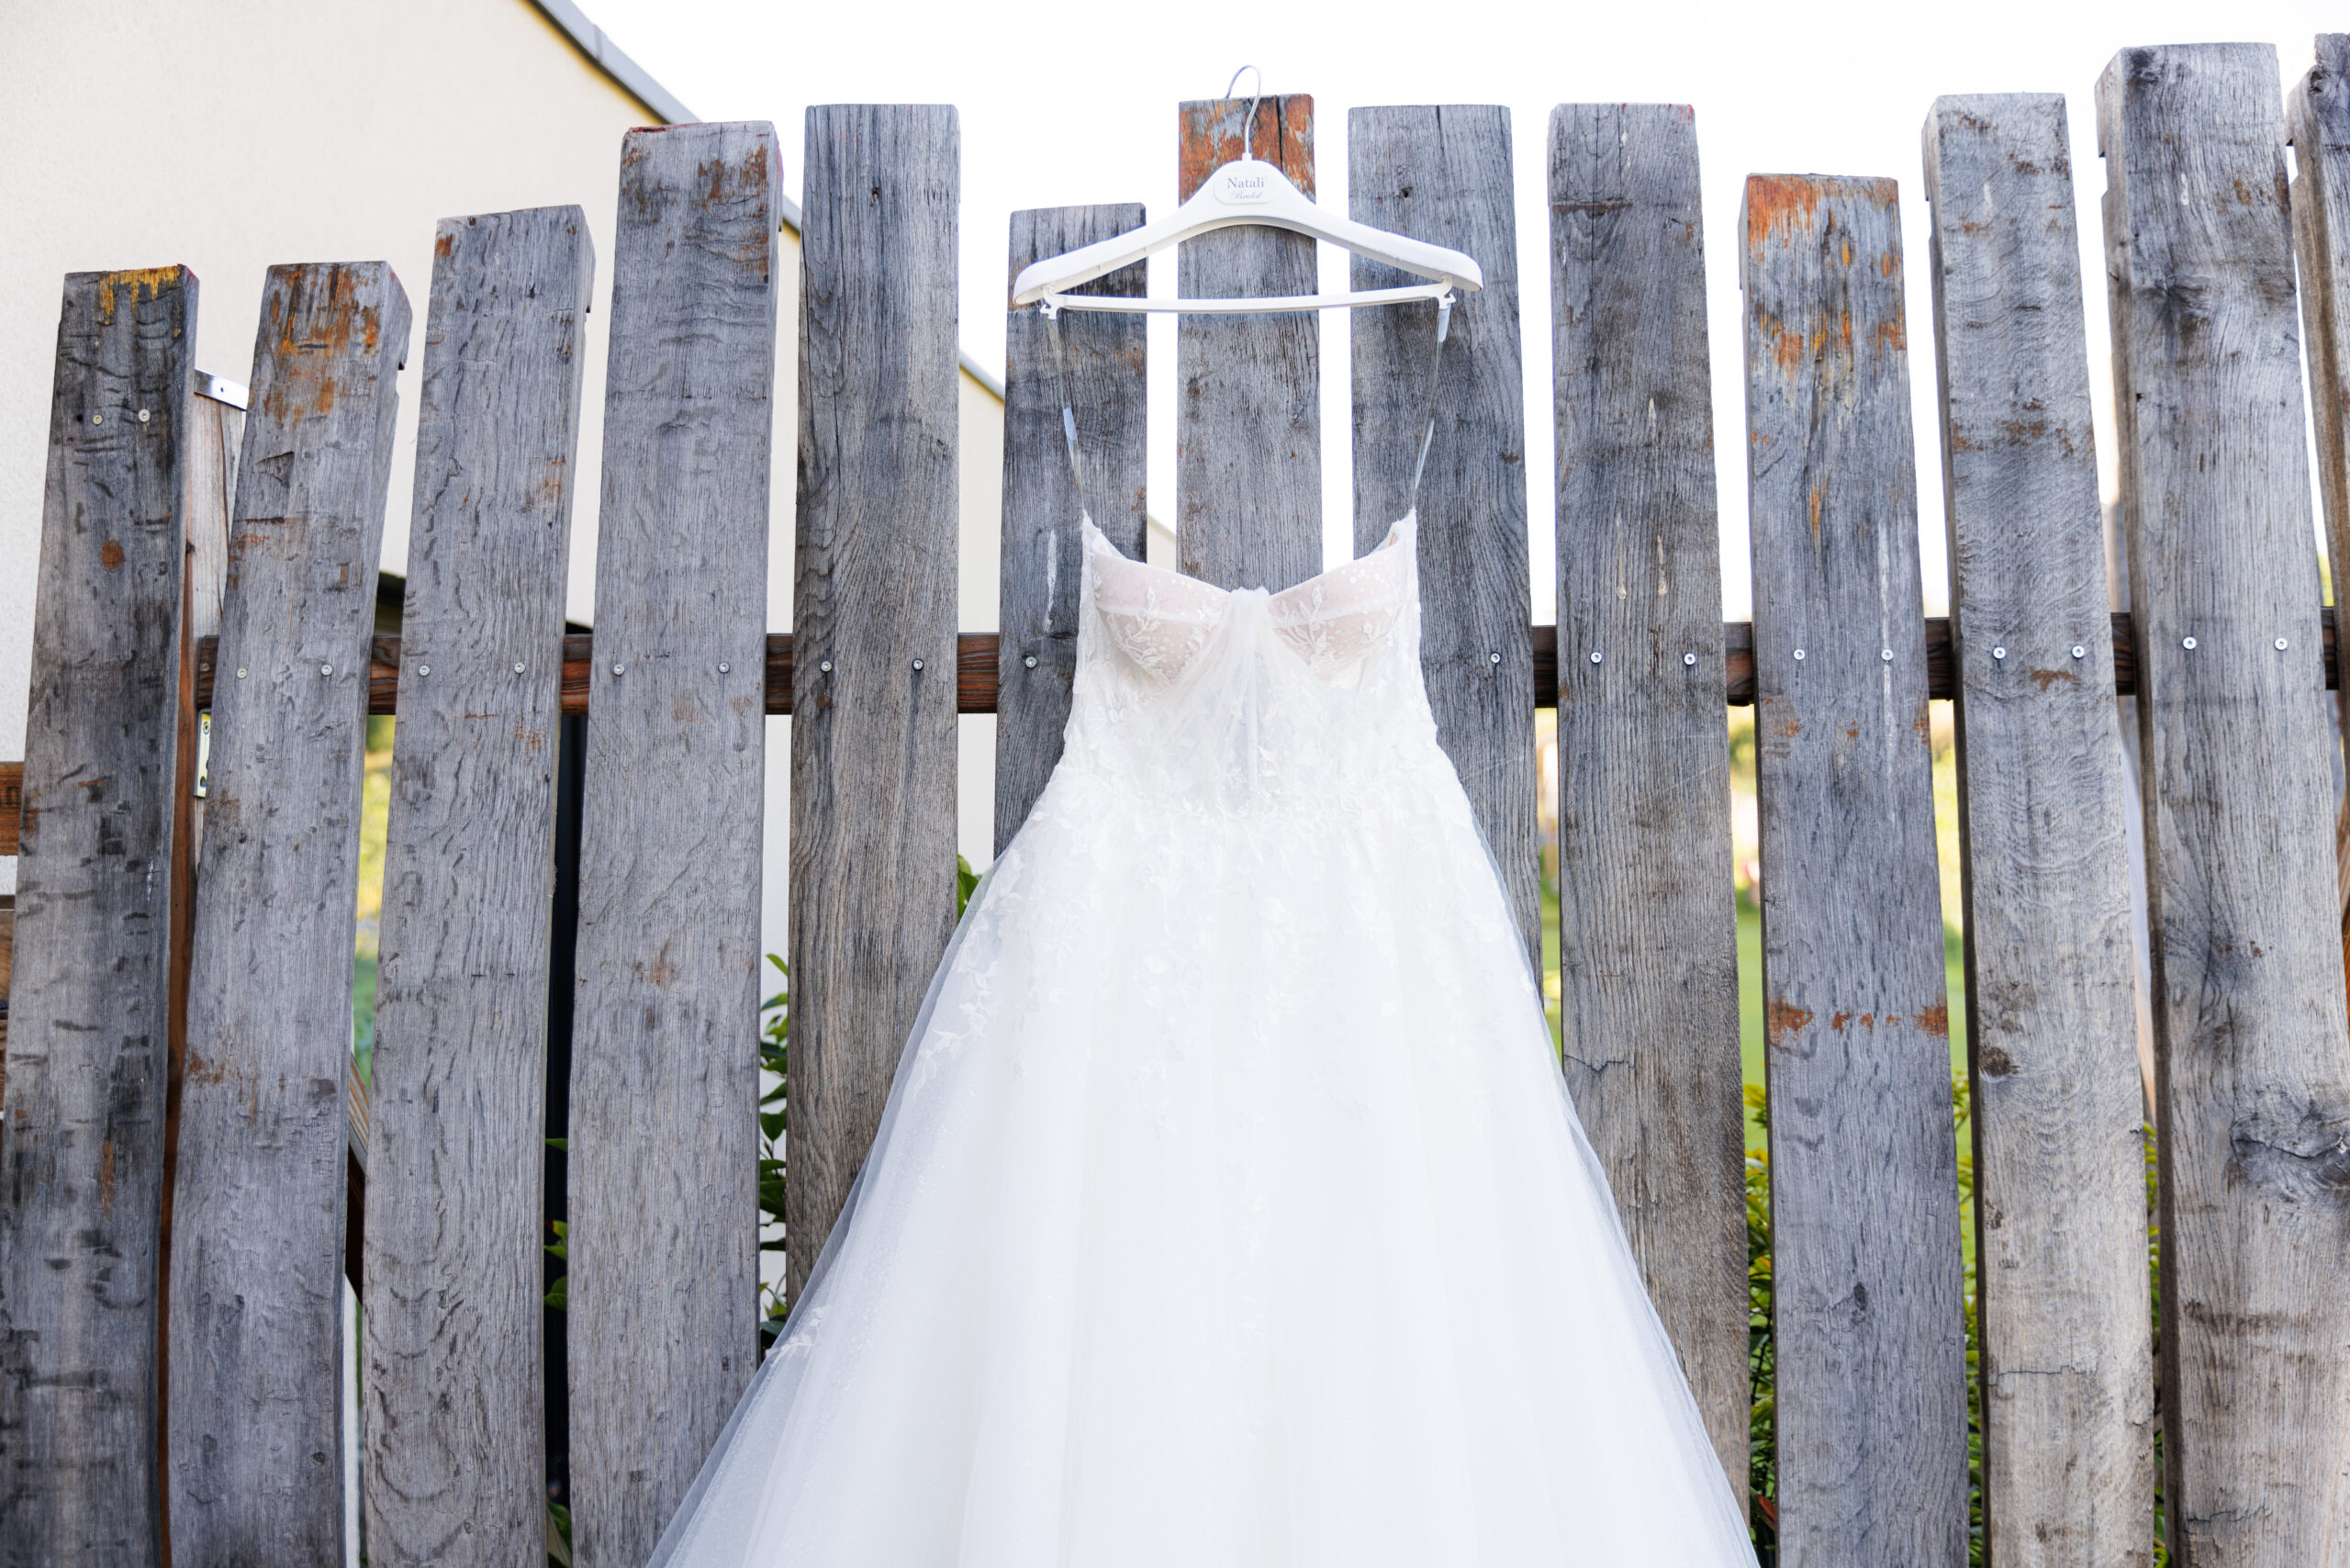 Hochzeitskleid, Hochzeitsfotografie